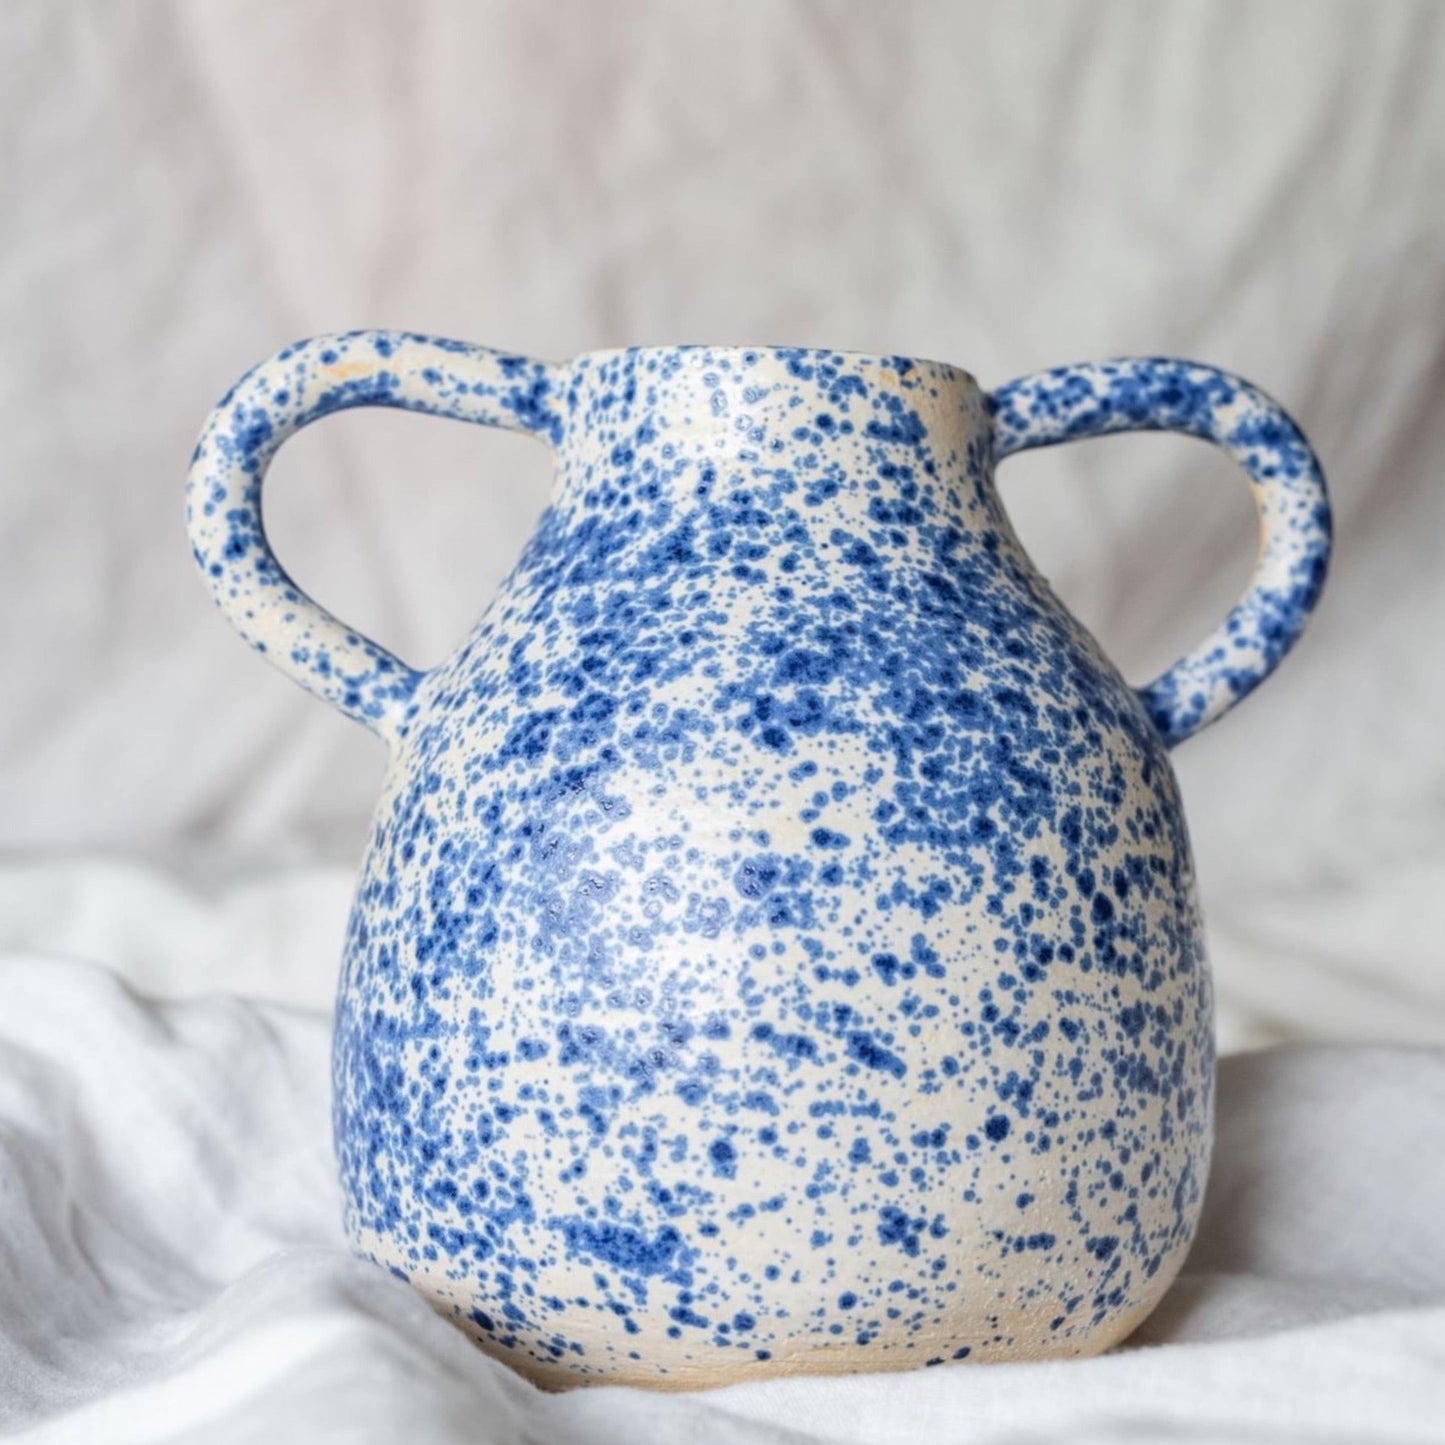 Blue Speckled flower Vase with handles